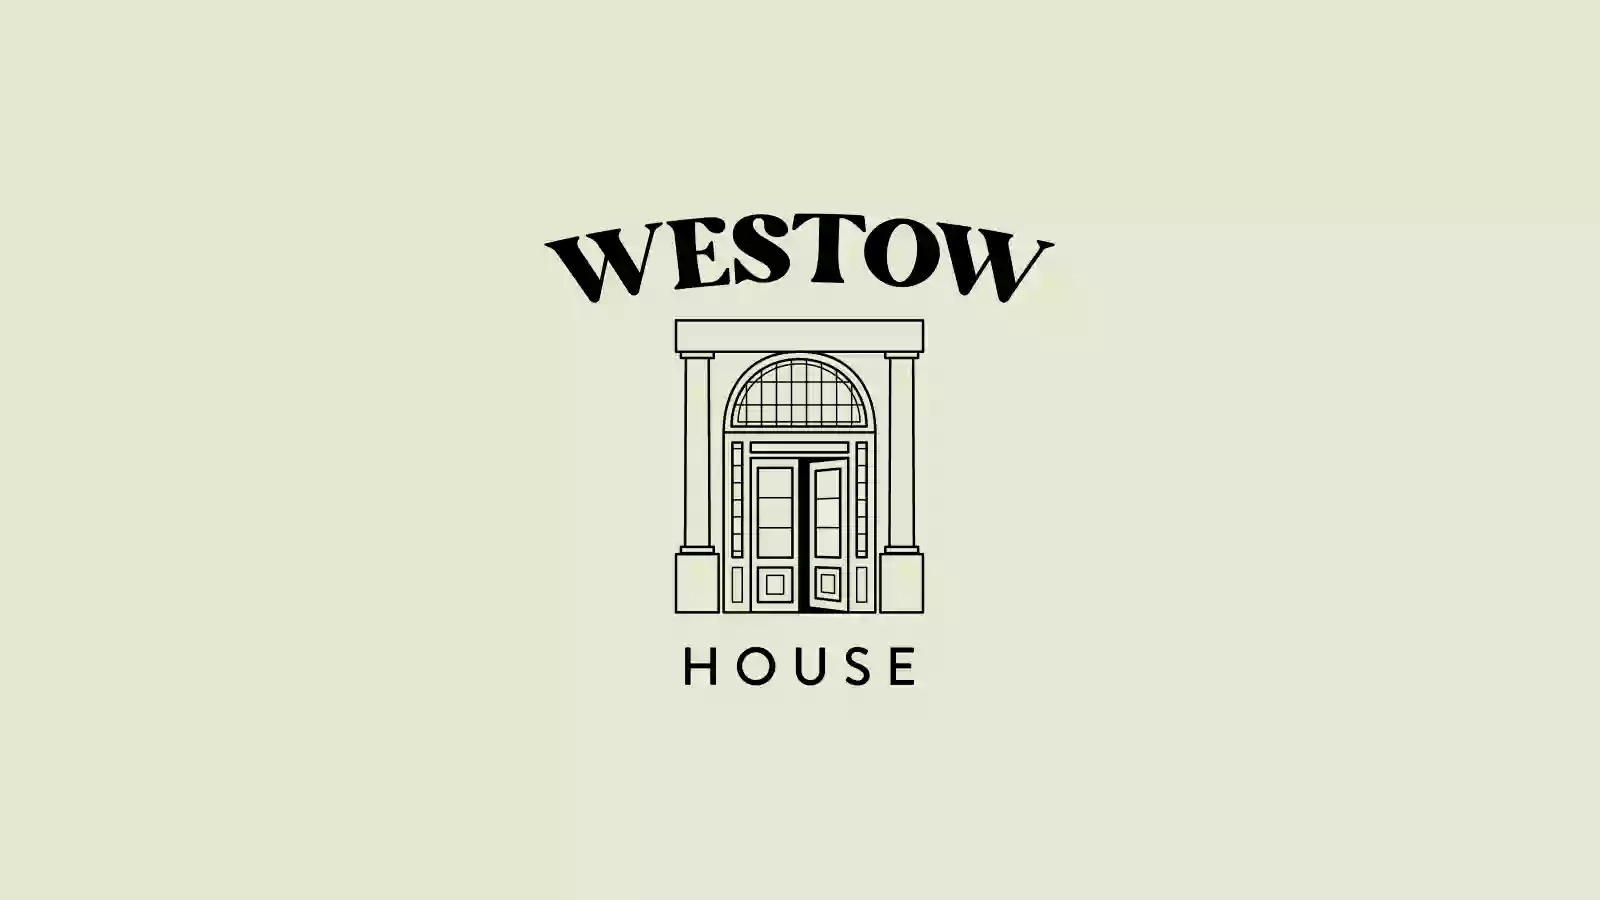 Westow House Pub & Hotel